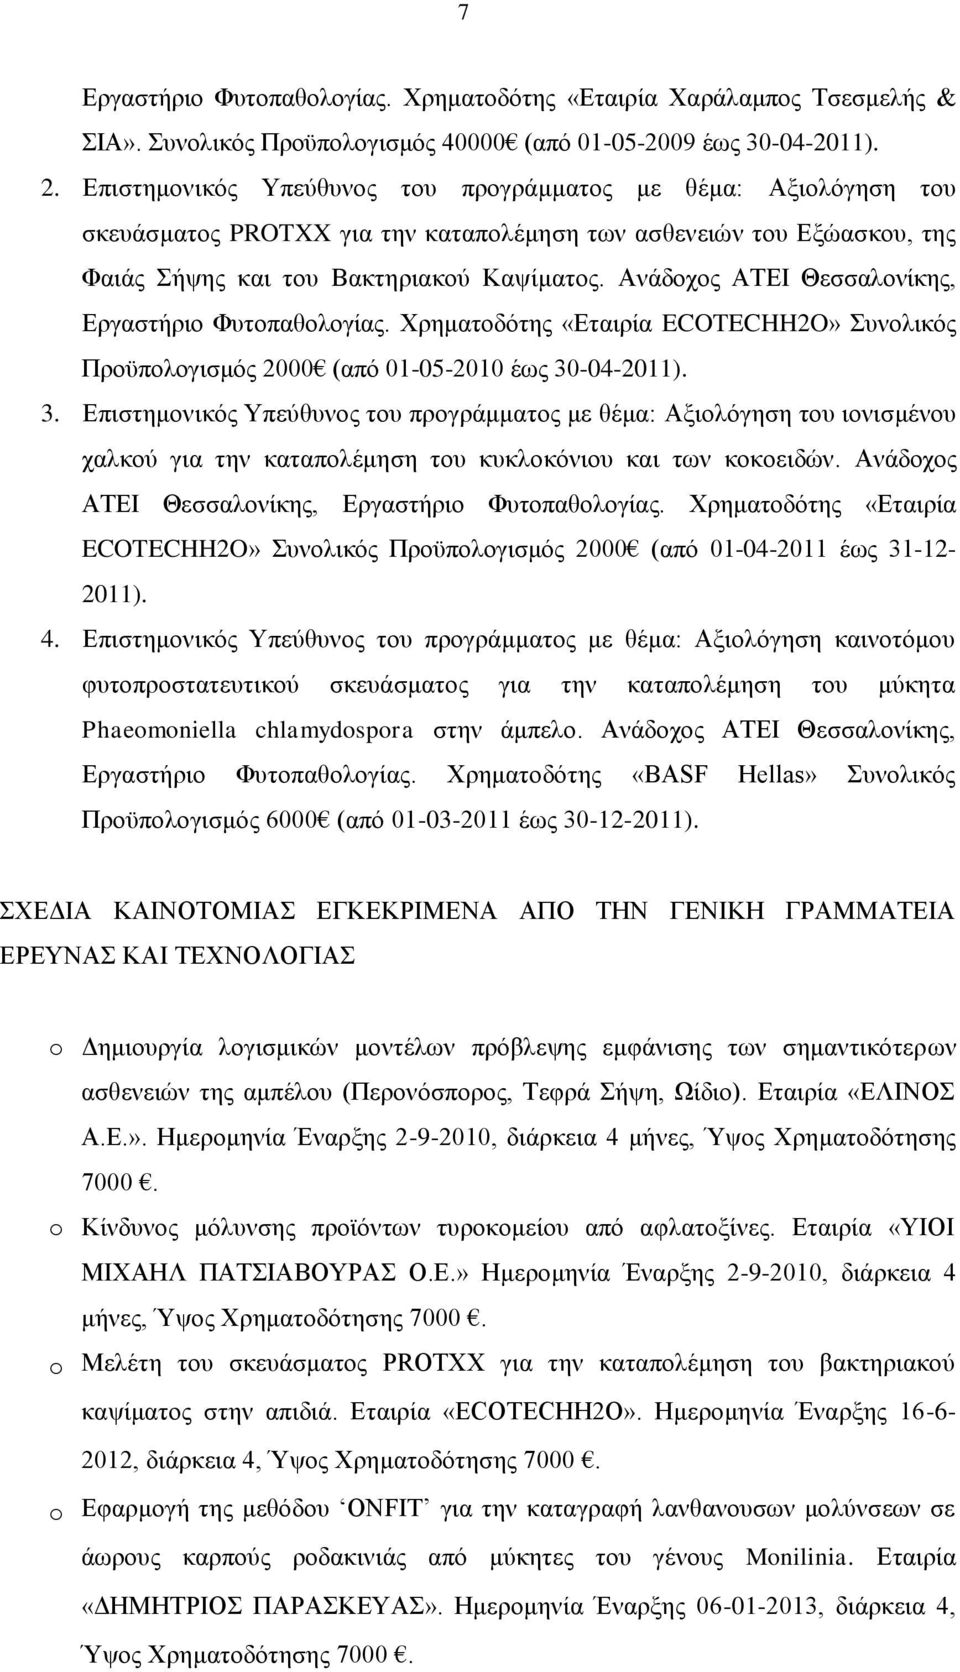 Ανάδοχος ΑΤΕΙ Θεσσαλονίκης, Εργαστήριο Φυτοπαθολογίας. Χρηματοδότης «Εταιρία ECOTECHH2O» Συνολικός Προϋπολογισμός 2000 (από 01-05-2010 έως 30